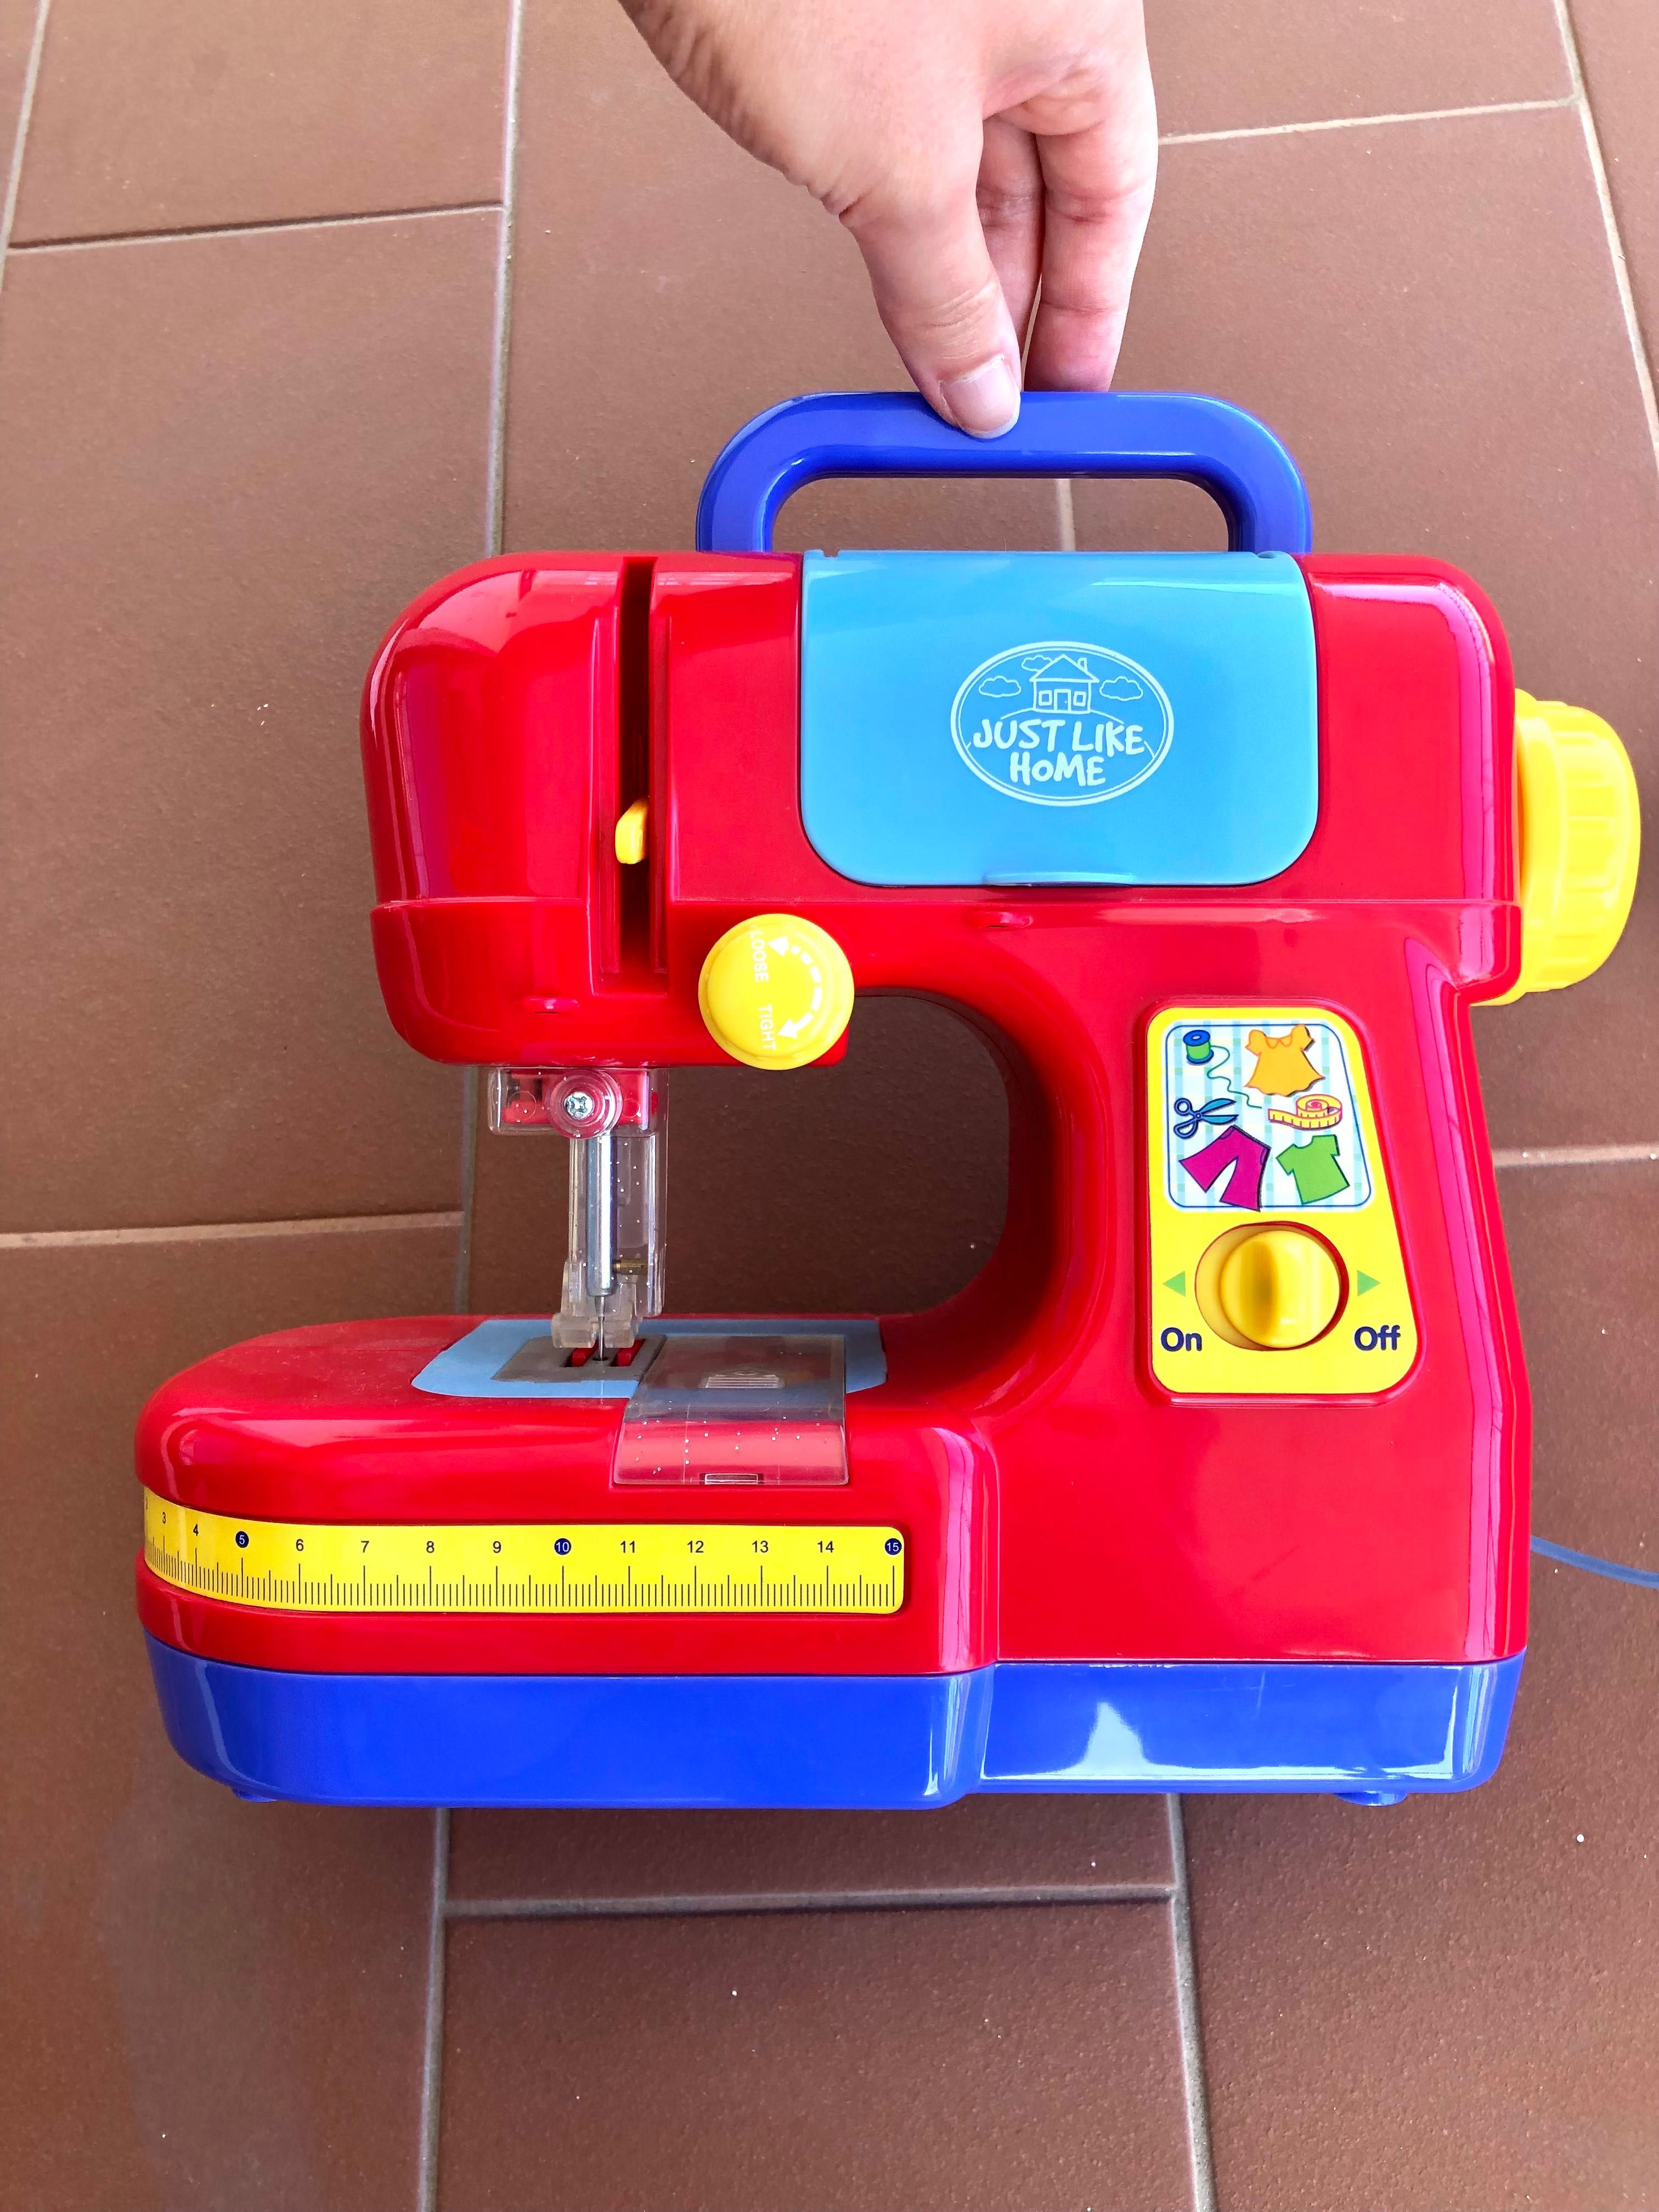 Máquina de costura para crianças - Just Like Home